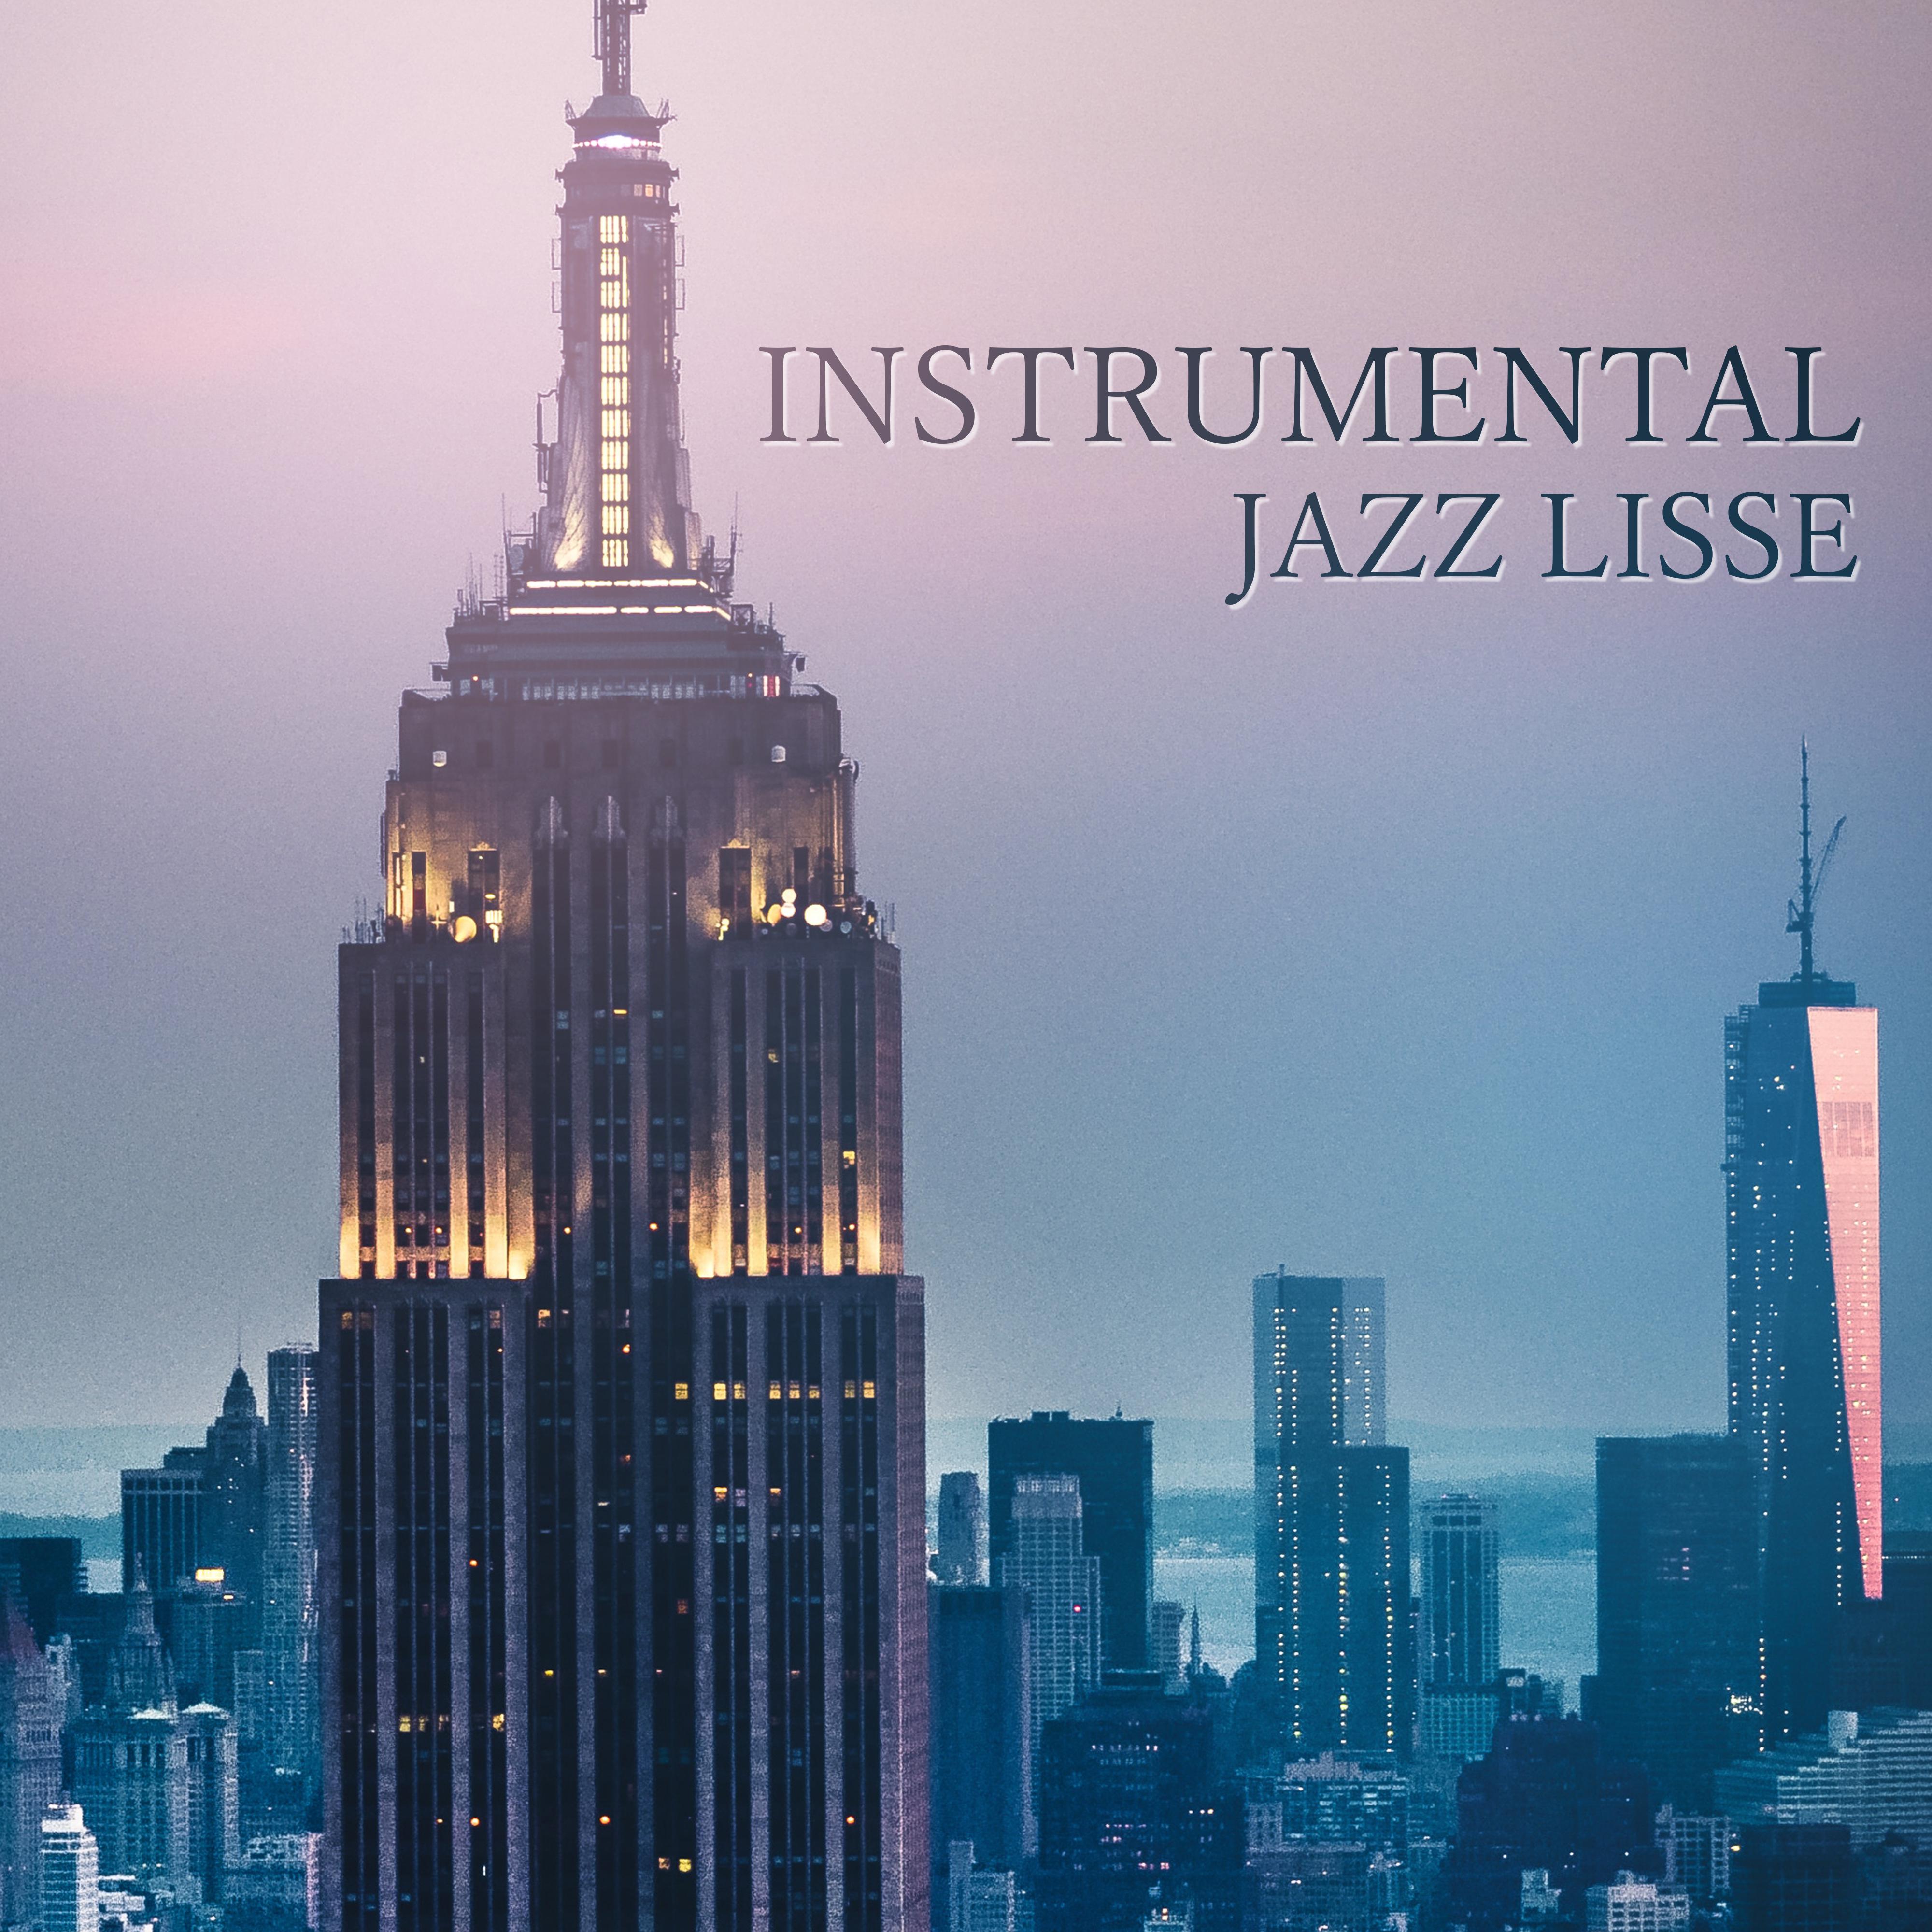 Instrumental jazz lisse